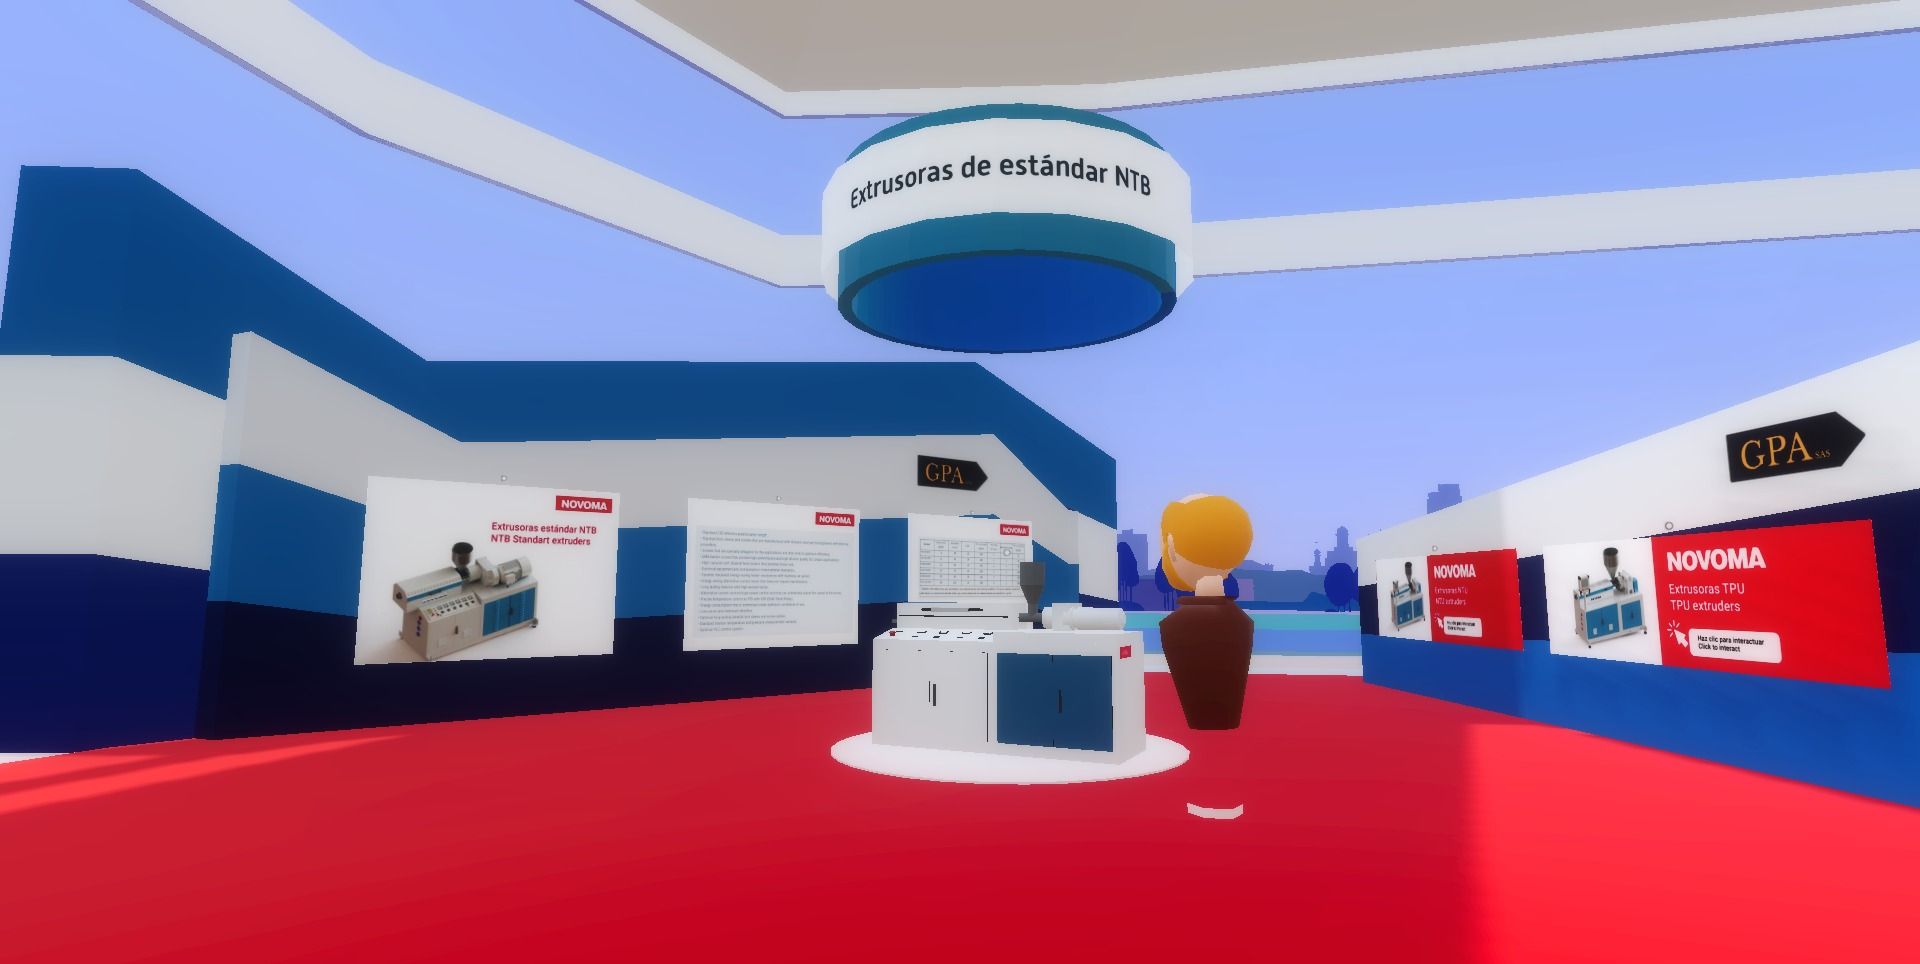 Visiteur interagissant avec l'extrudeuse de caoutchouc d'une entreprise exposée dans son showroom virtuel | vcity.io